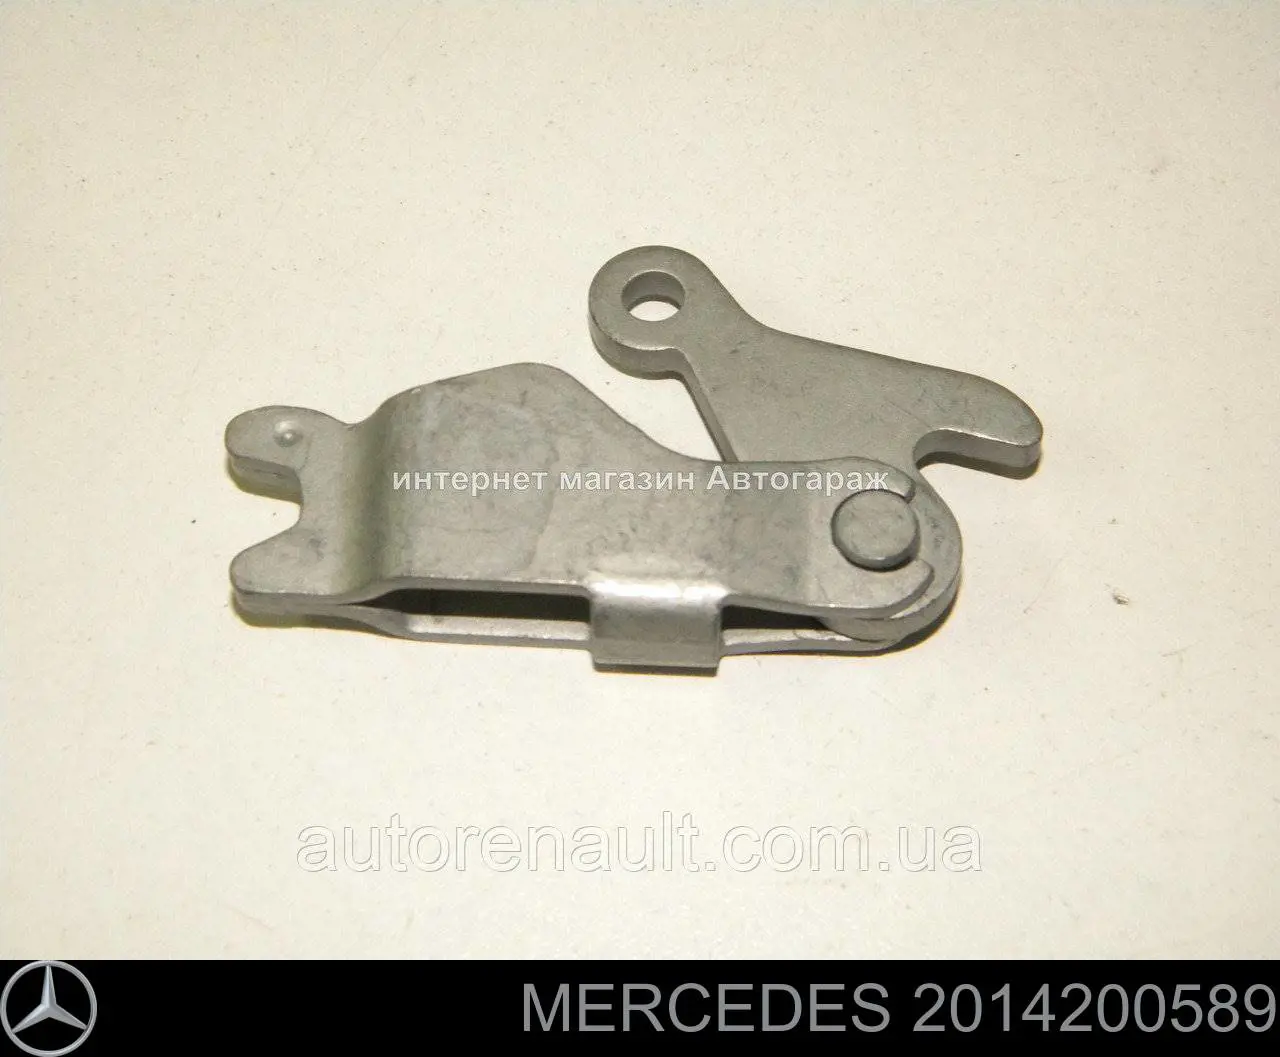 2014200589 Mercedes mecanismo de expansão das sapatas do freio de estacionamento